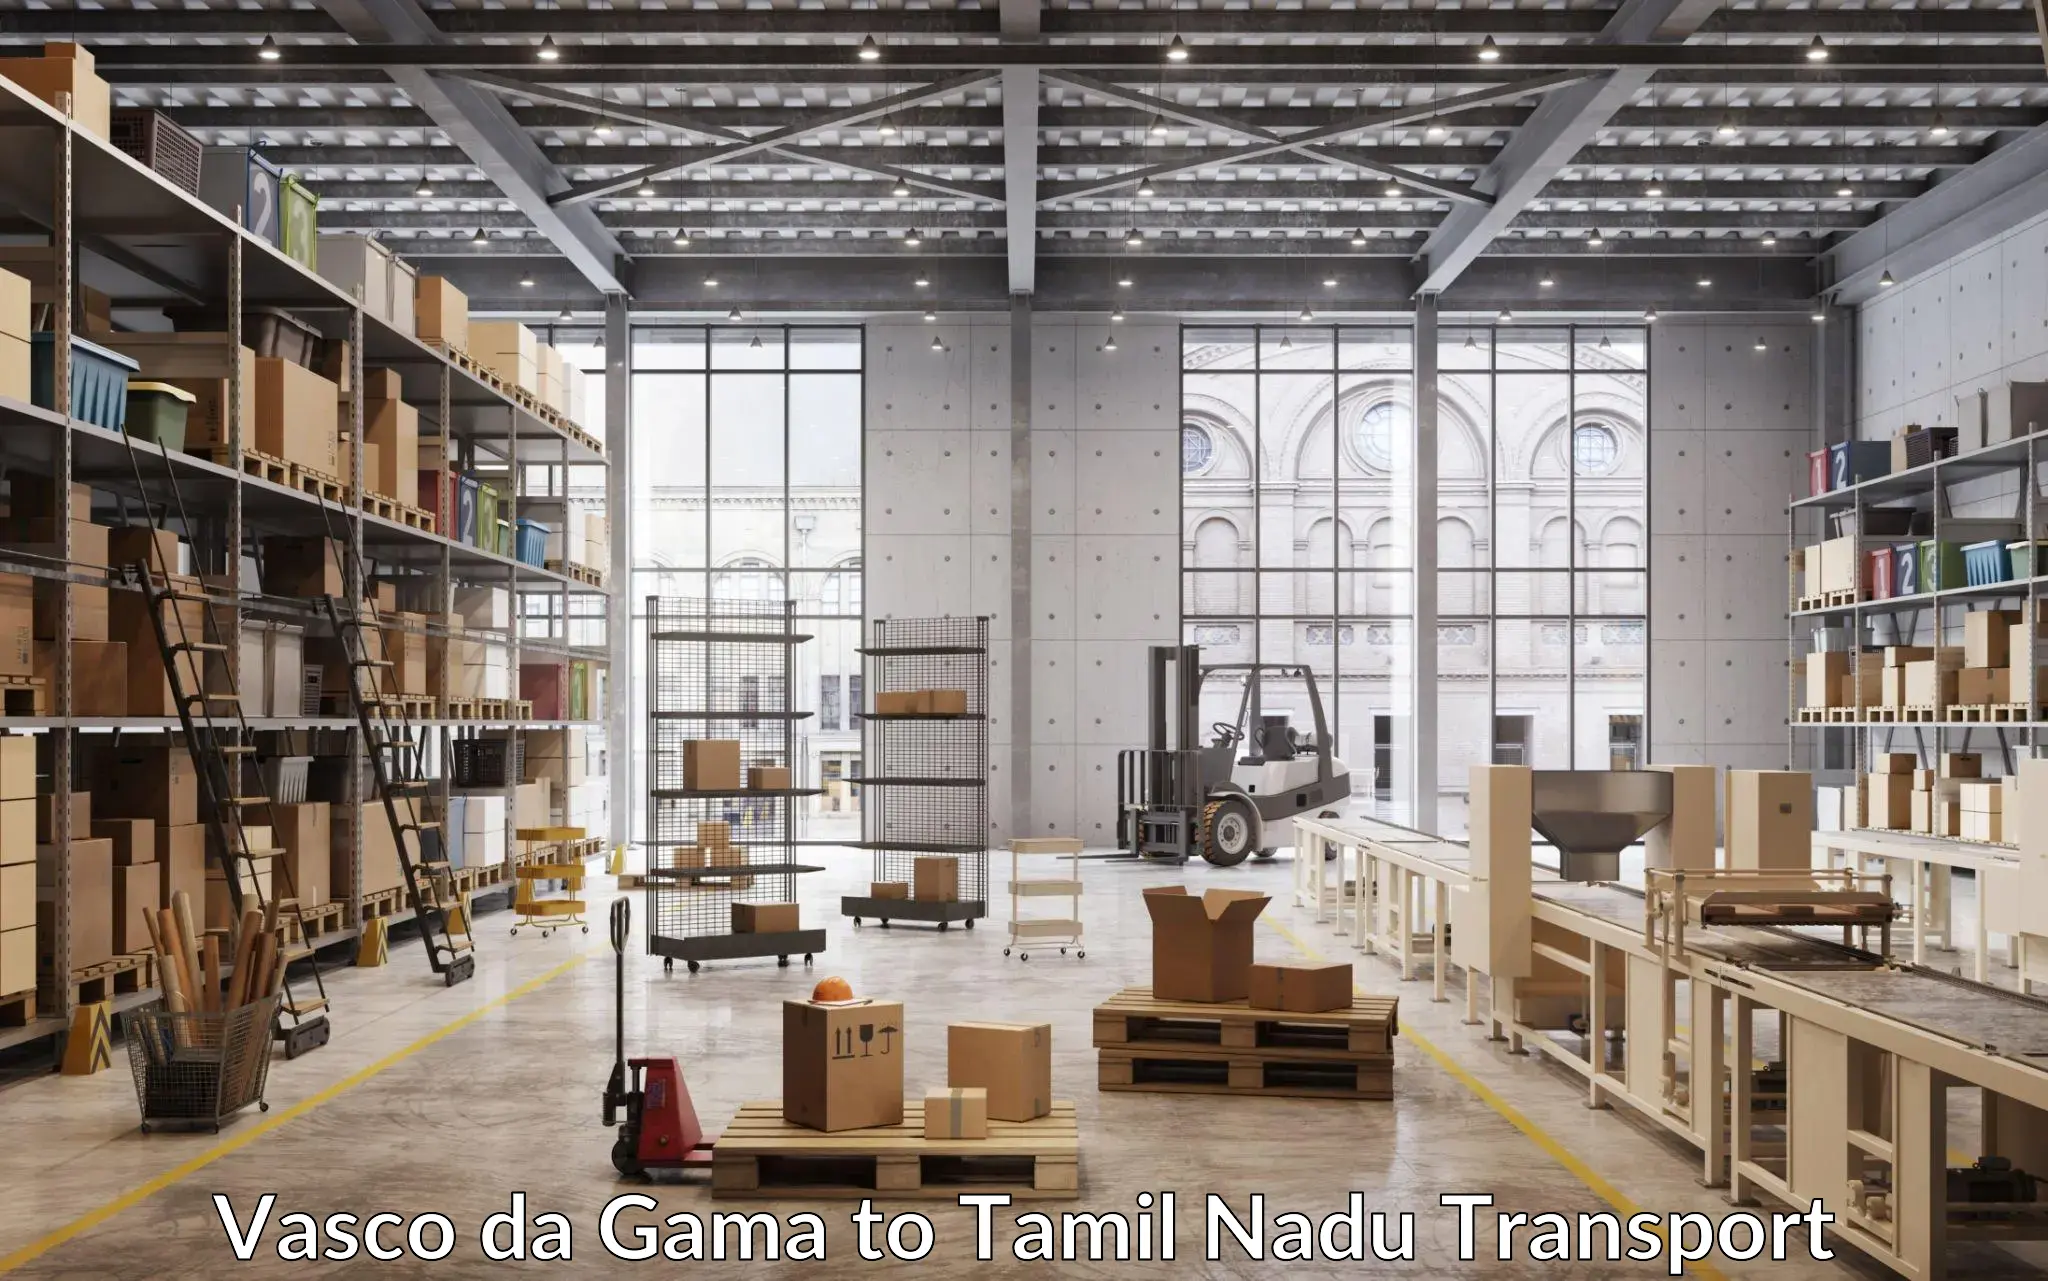 Air freight transport services Vasco da Gama to The Gandhigram Rural Institute